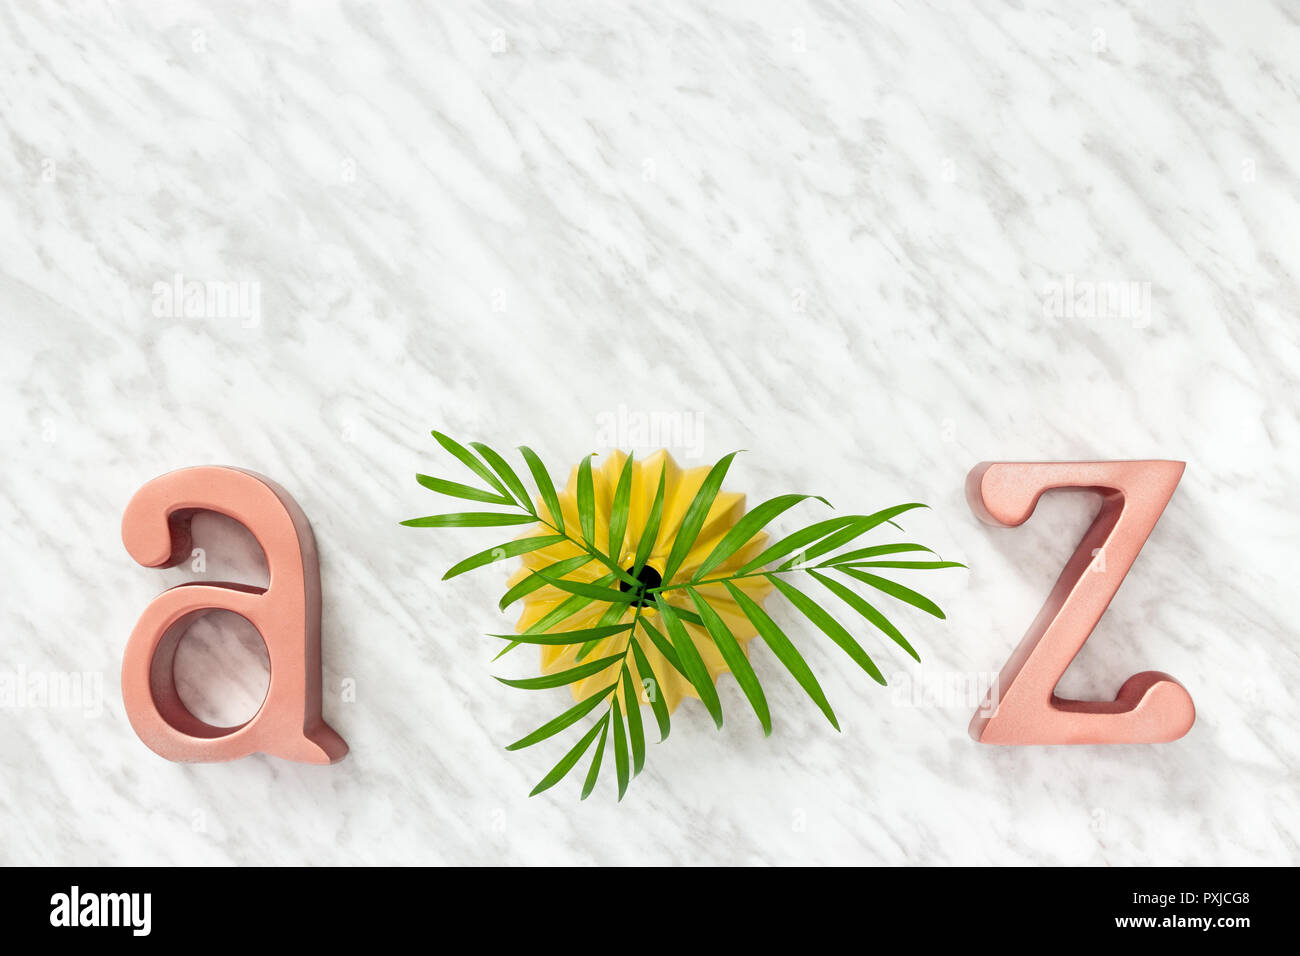 Metall Buchstaben A und Z und grünen Palmen Blätter in einem gelben Keramik Vase, auf Marmor Hintergrund. Stockfoto